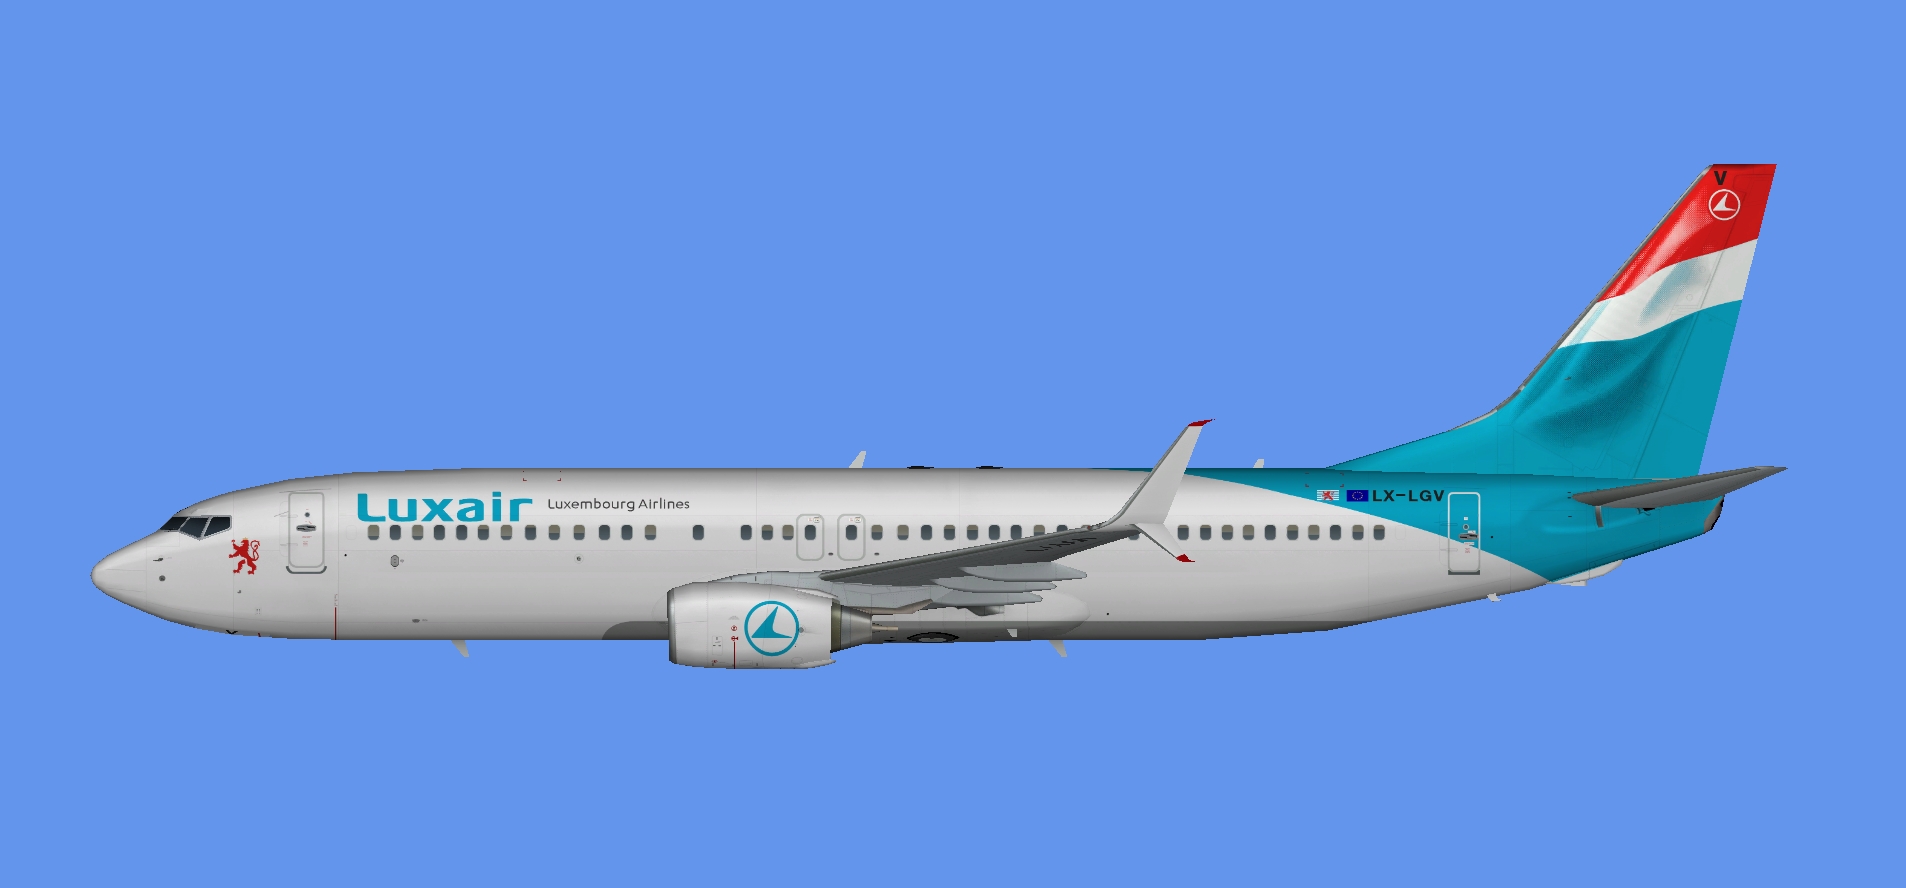 Luxair Boeing 737-800